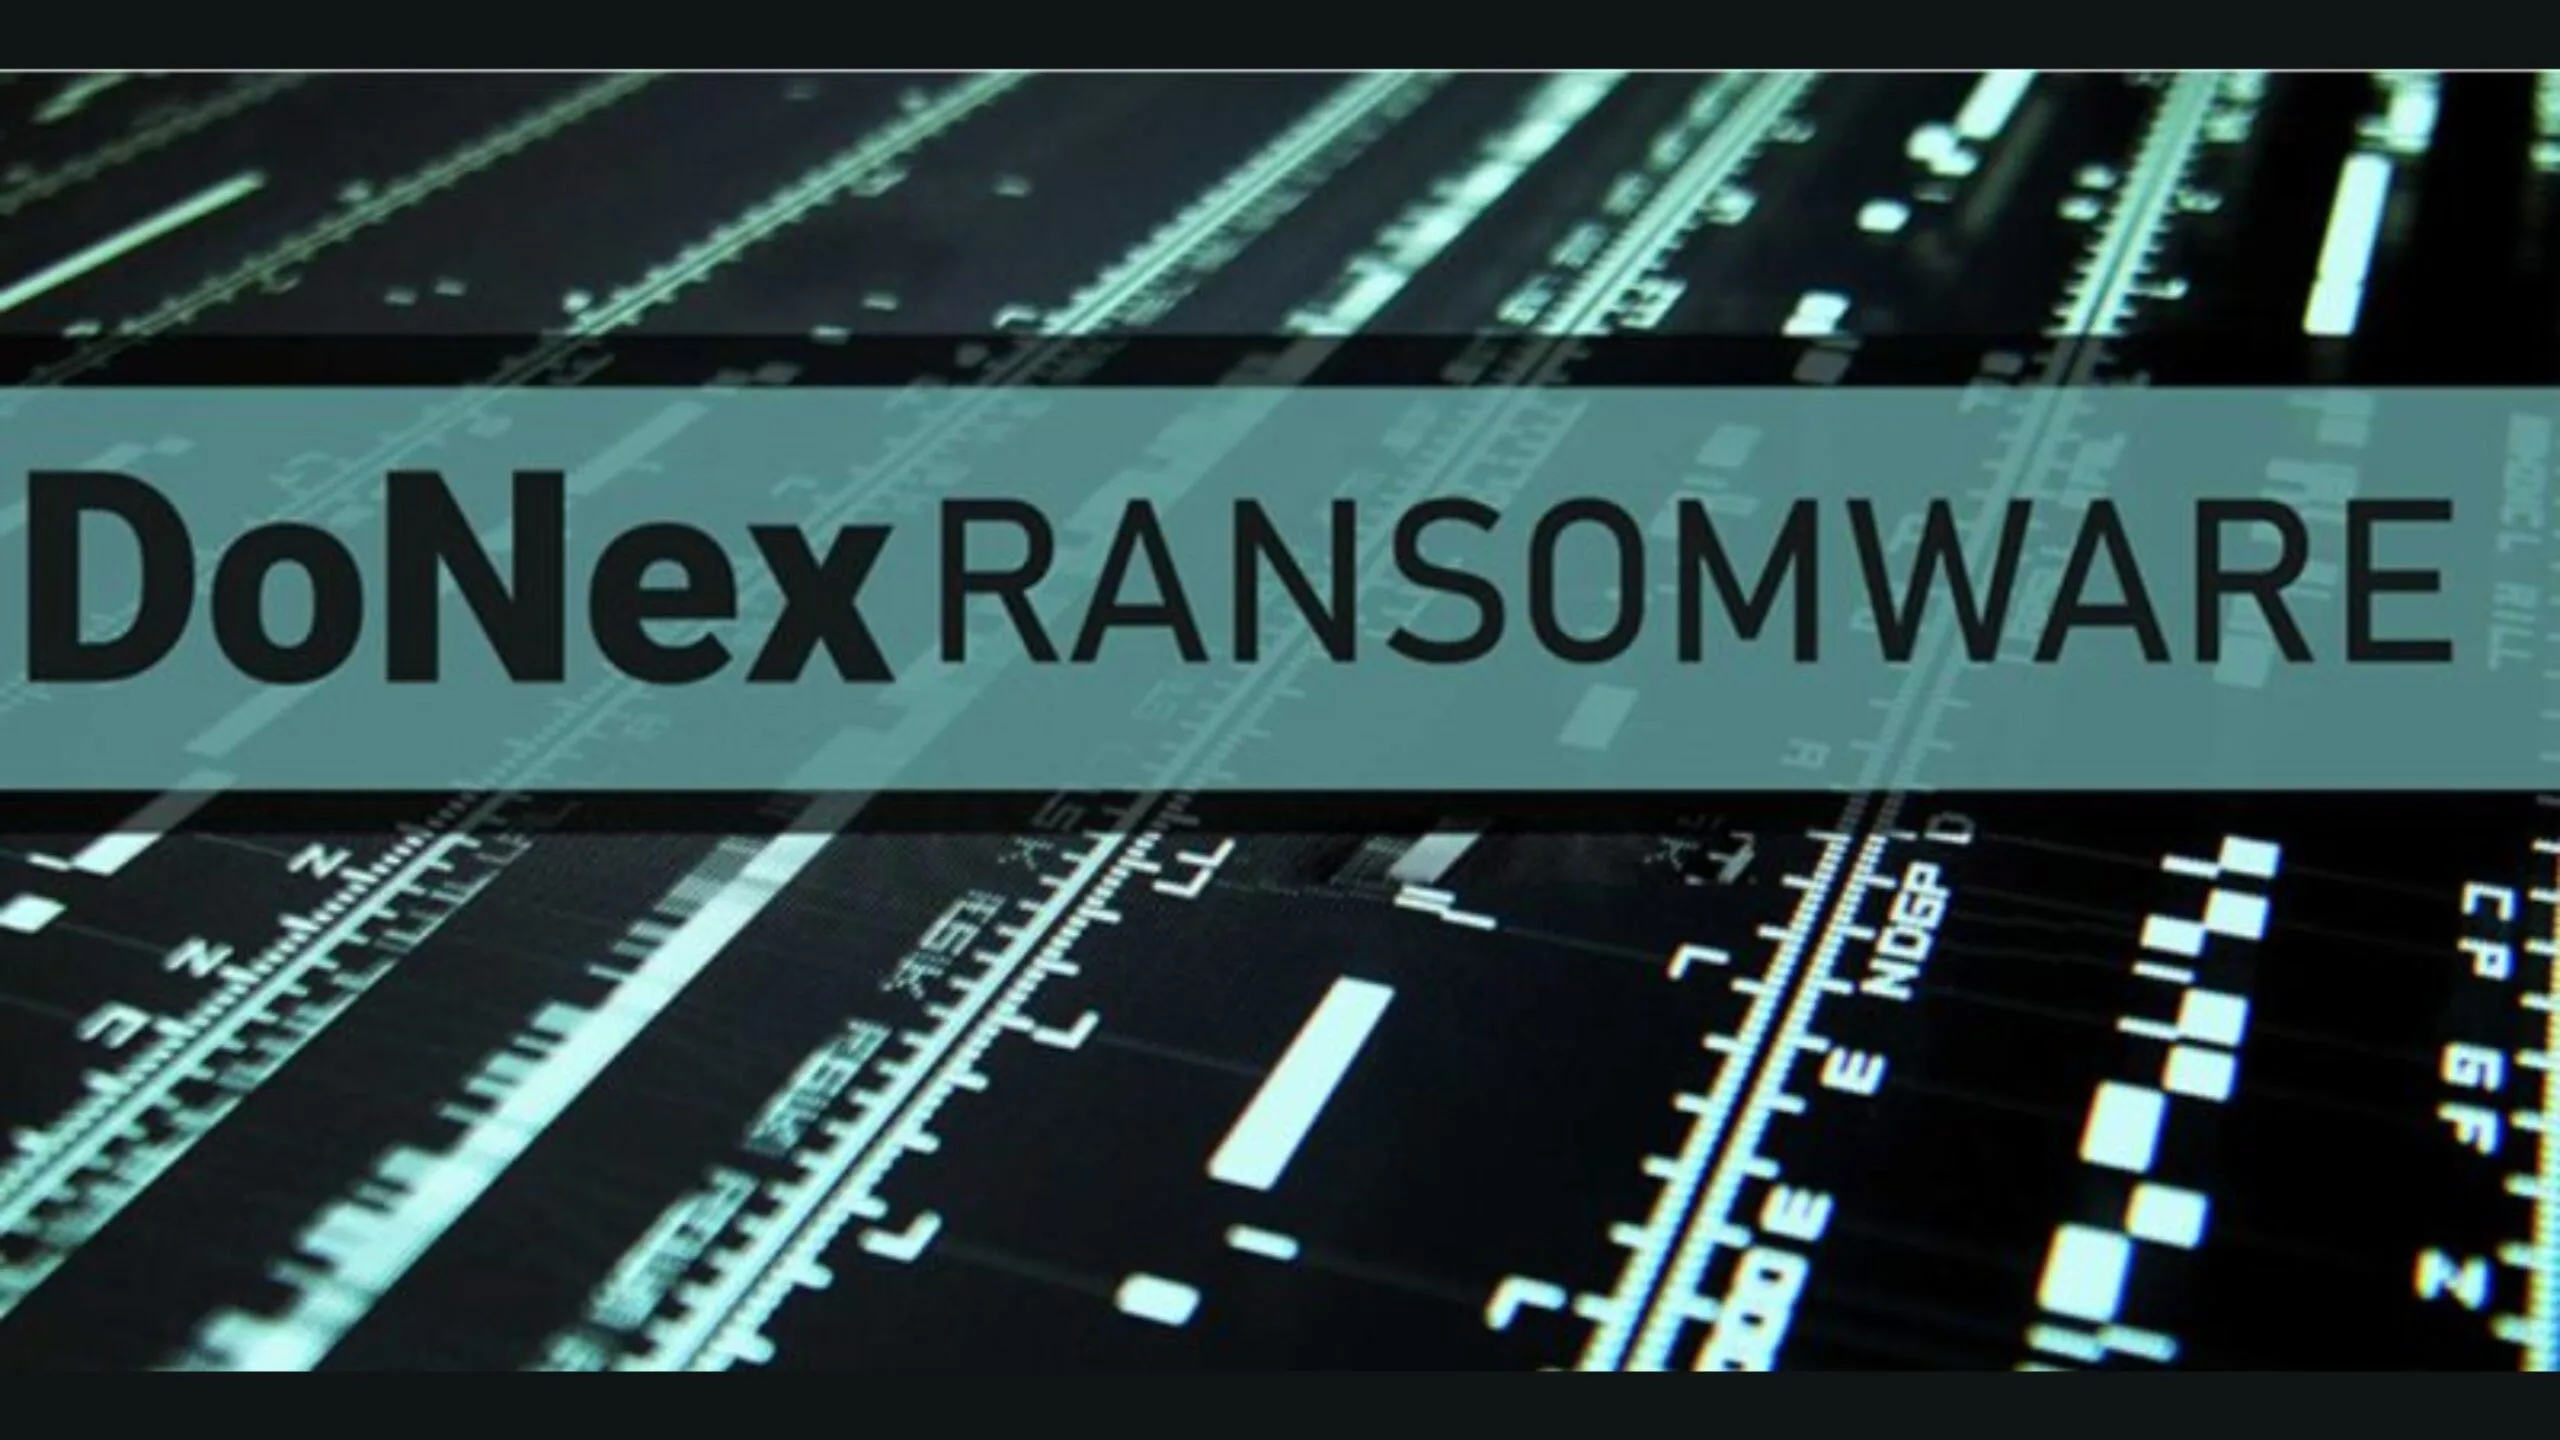 Imagem com o nome Donex ransomware em destaque